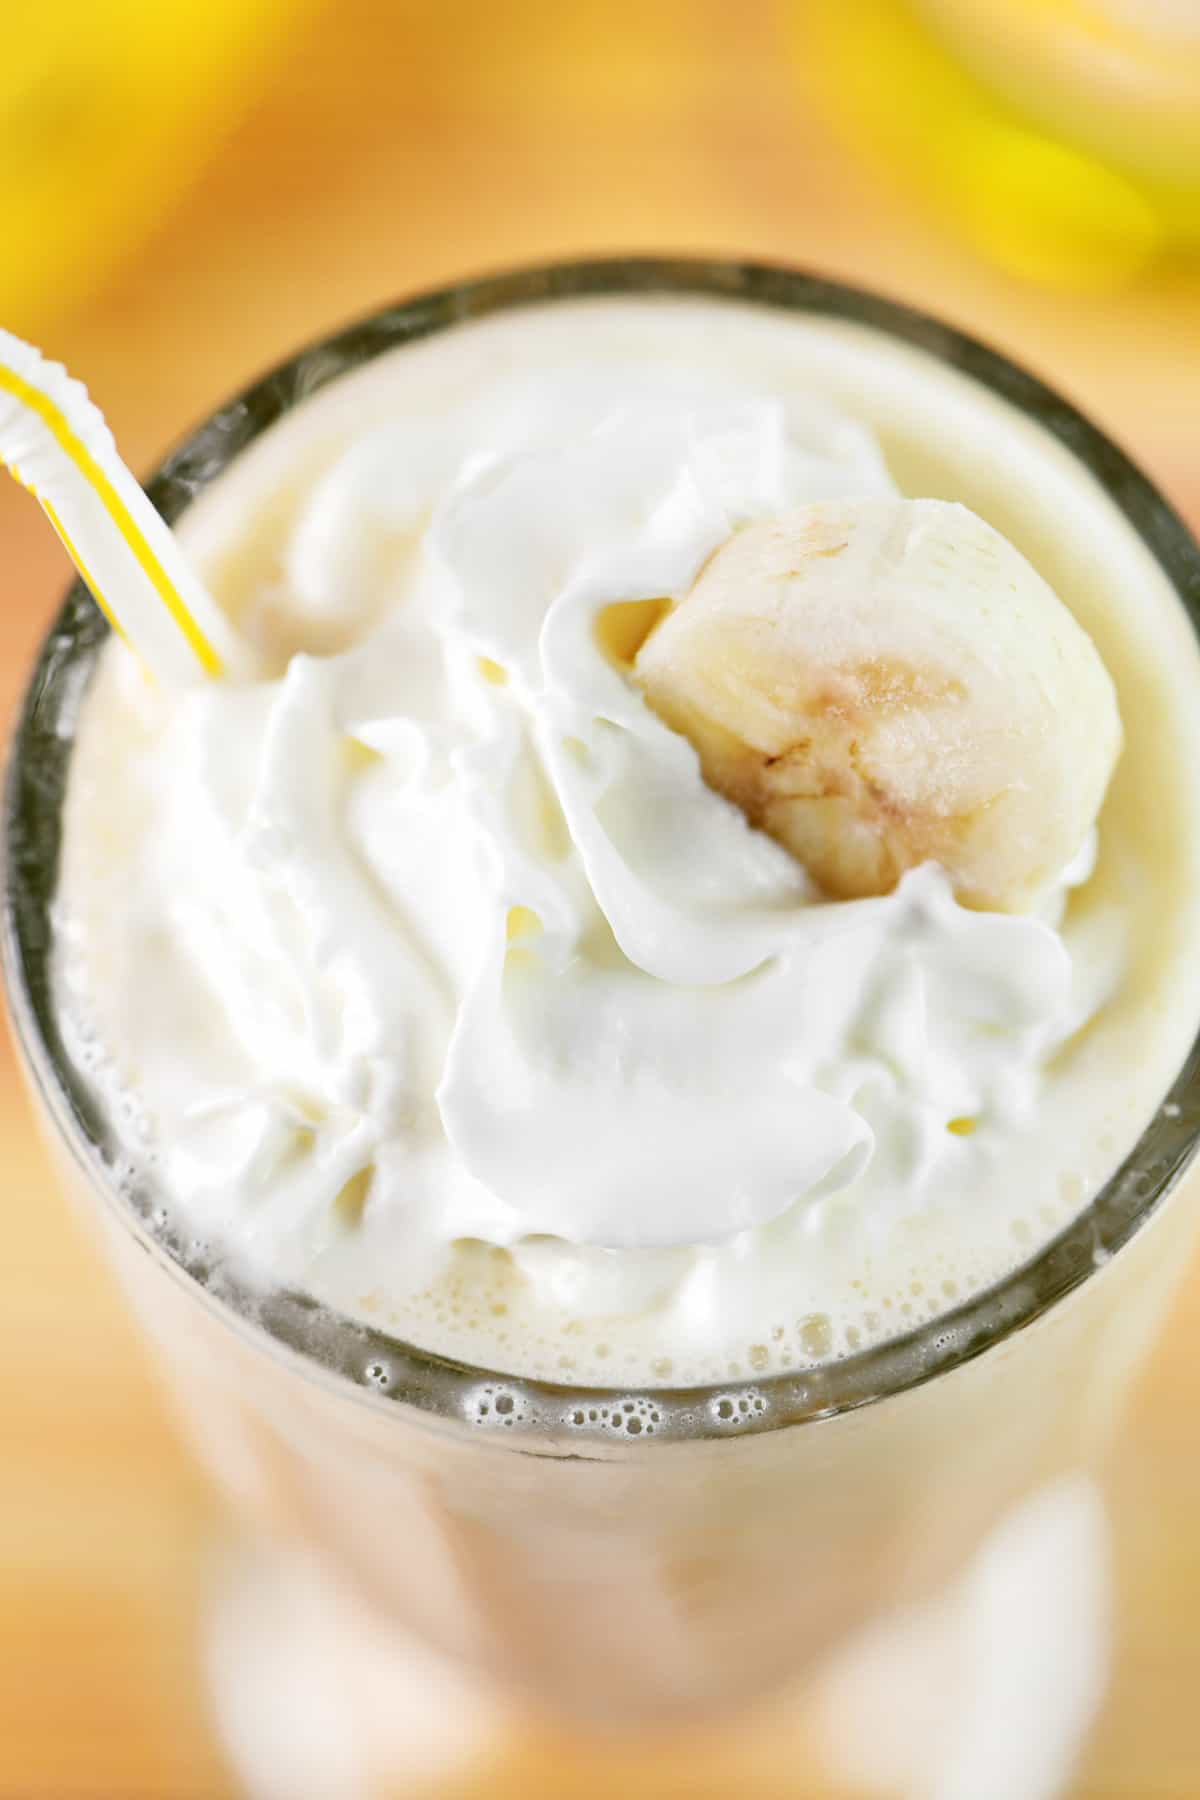 Top of a banana milkshake with whipped cream.